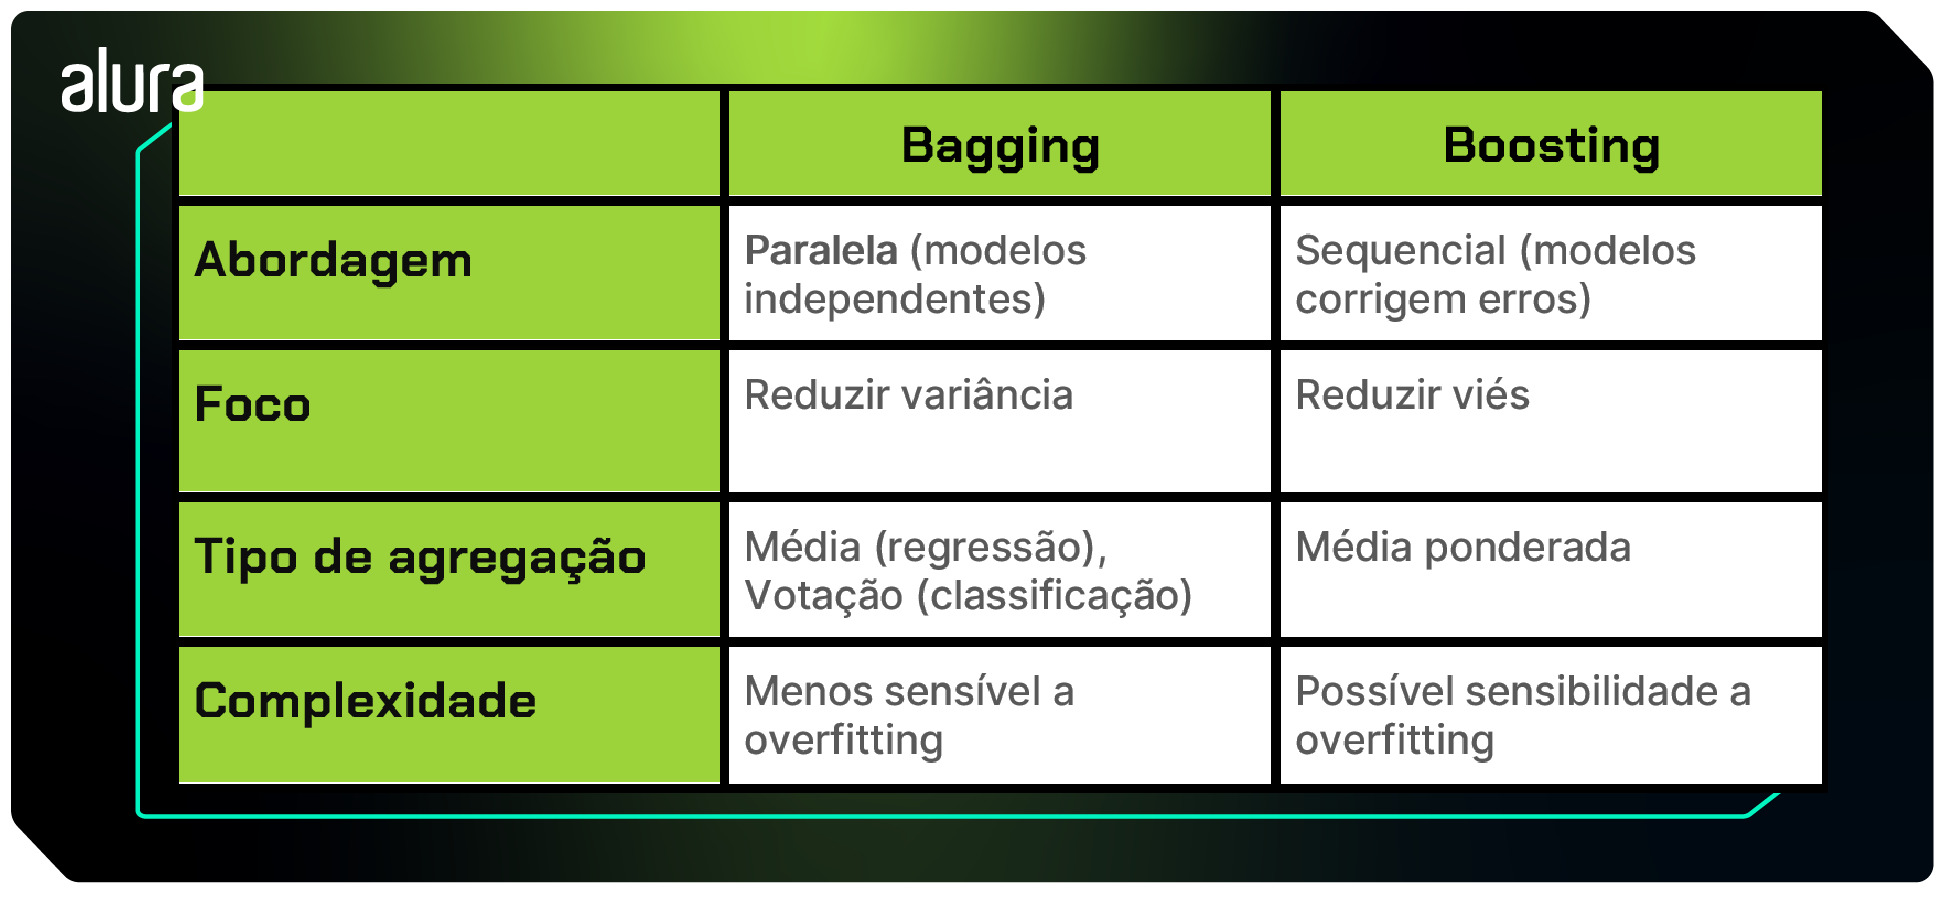 Tabela sobre a comparação entre os métodos ensemble Bagging e Boosting. Na tabela, temos três colunas: A primeira contendo as características, outra do Bagging e a última do Boosting. Abaixo das colunas de Bagging e Boosting estão descritas cada uma das características que diferenciam os dois métodos.